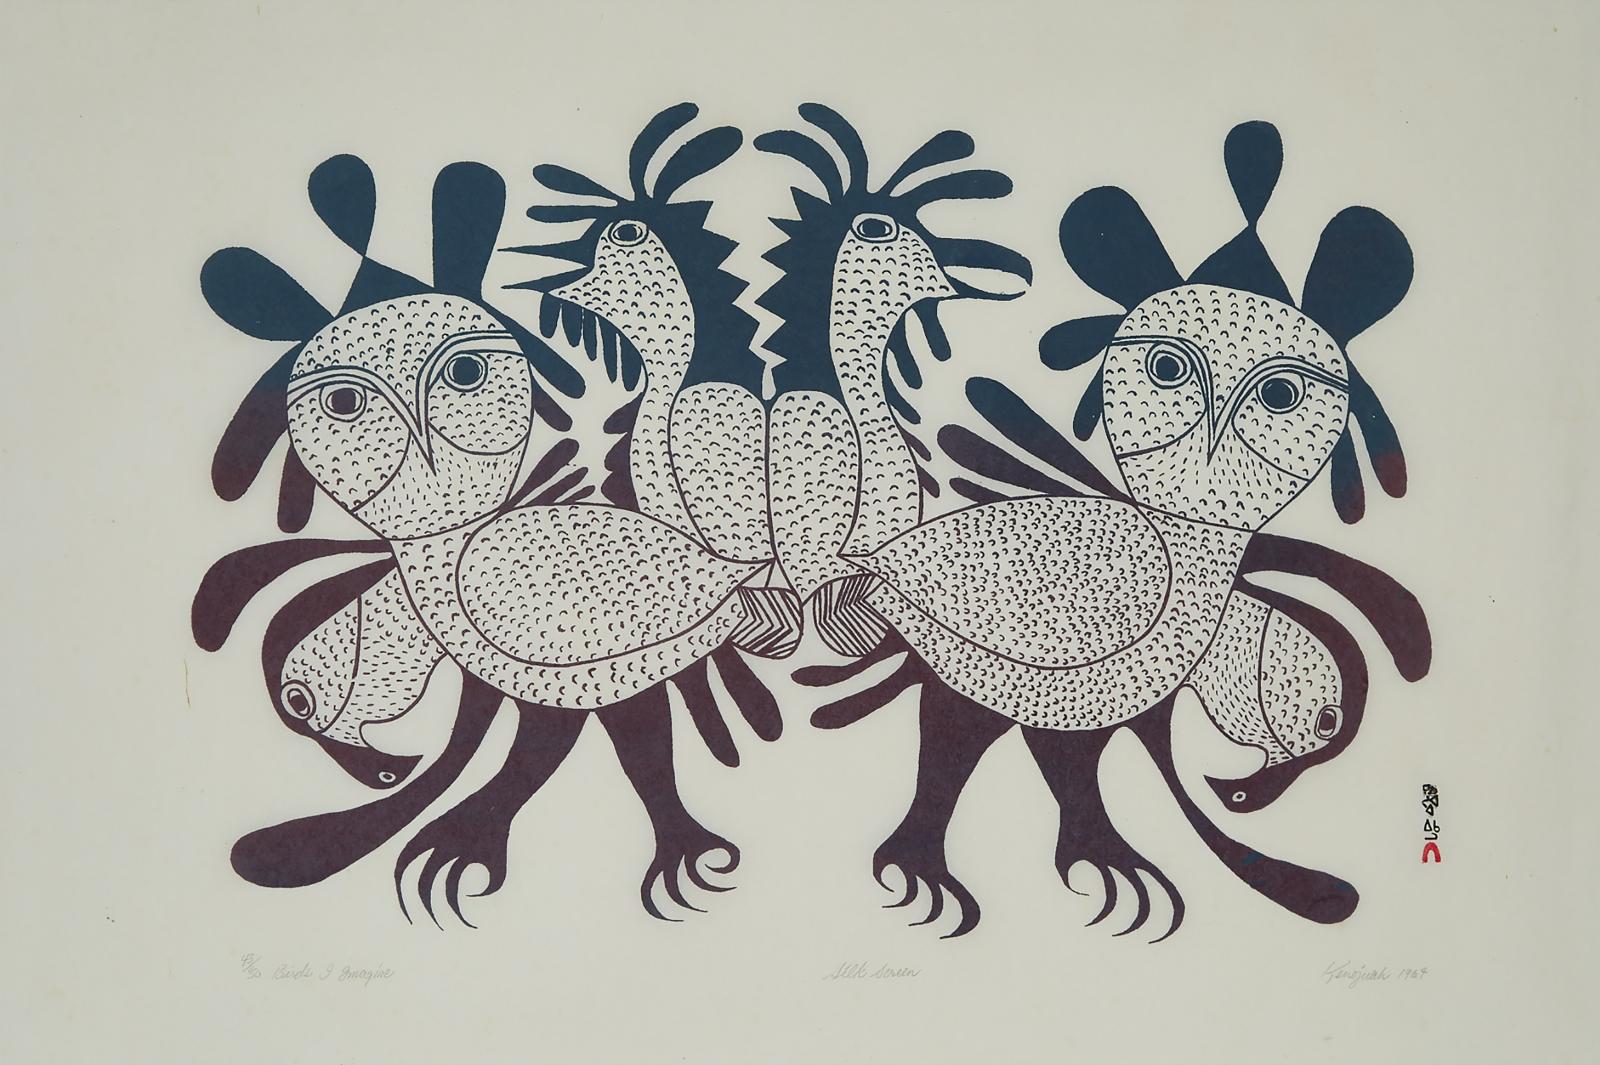 Kenojuak Ashevak (1927-2013) - Birds I Imagine